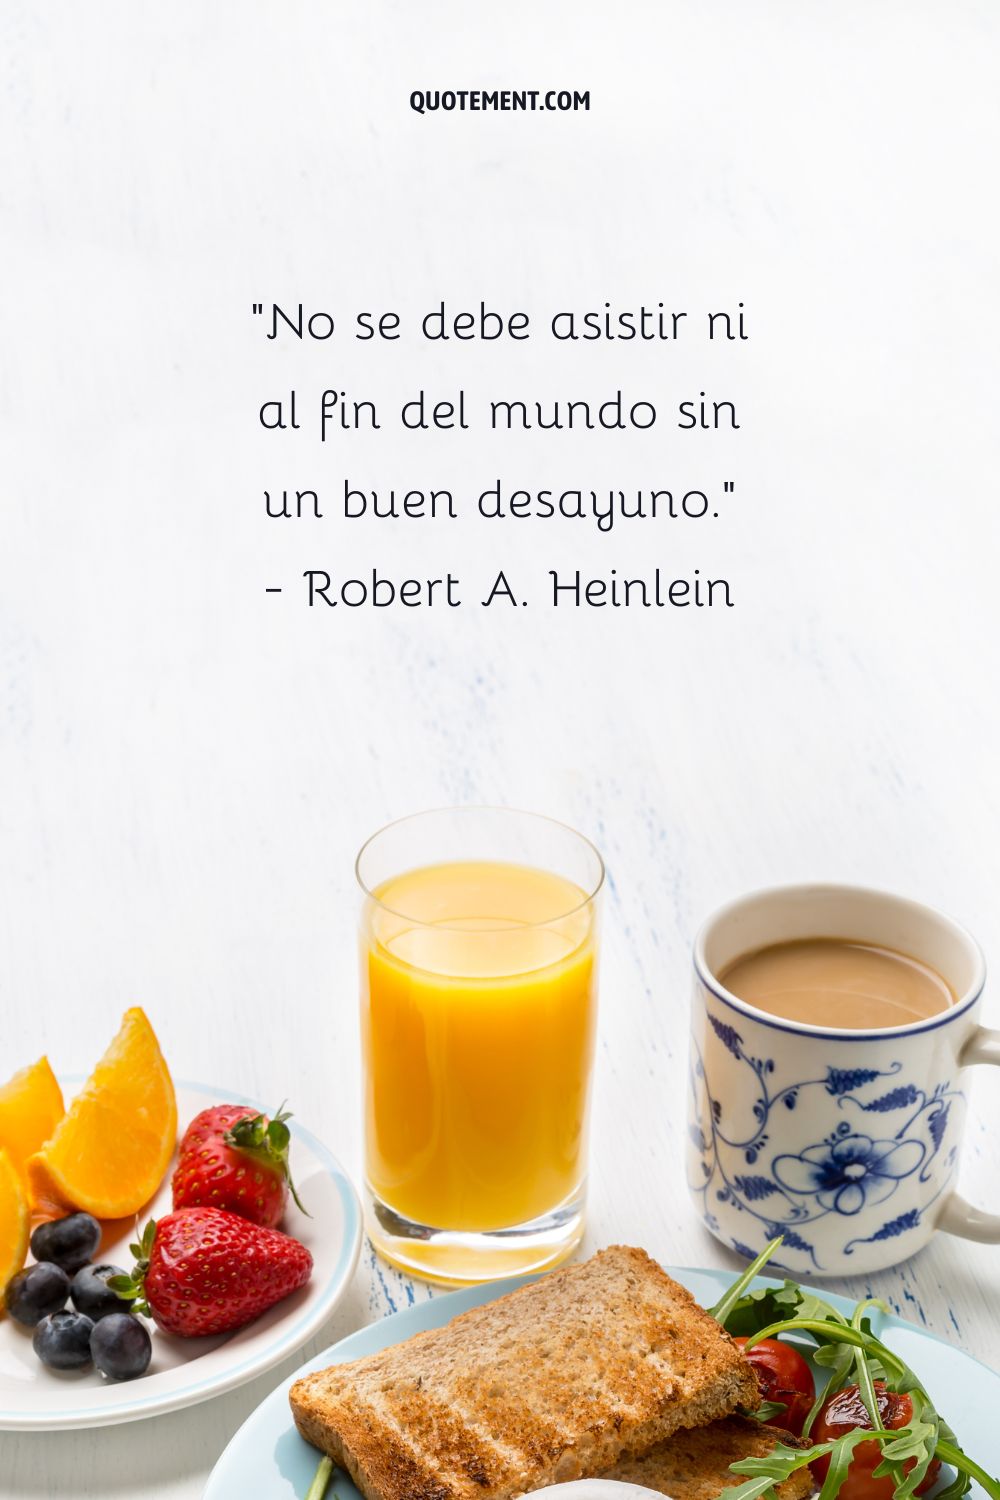 "No se debe asistir ni al fin del mundo sin un buen desayuno". - Robert A. Heinlein